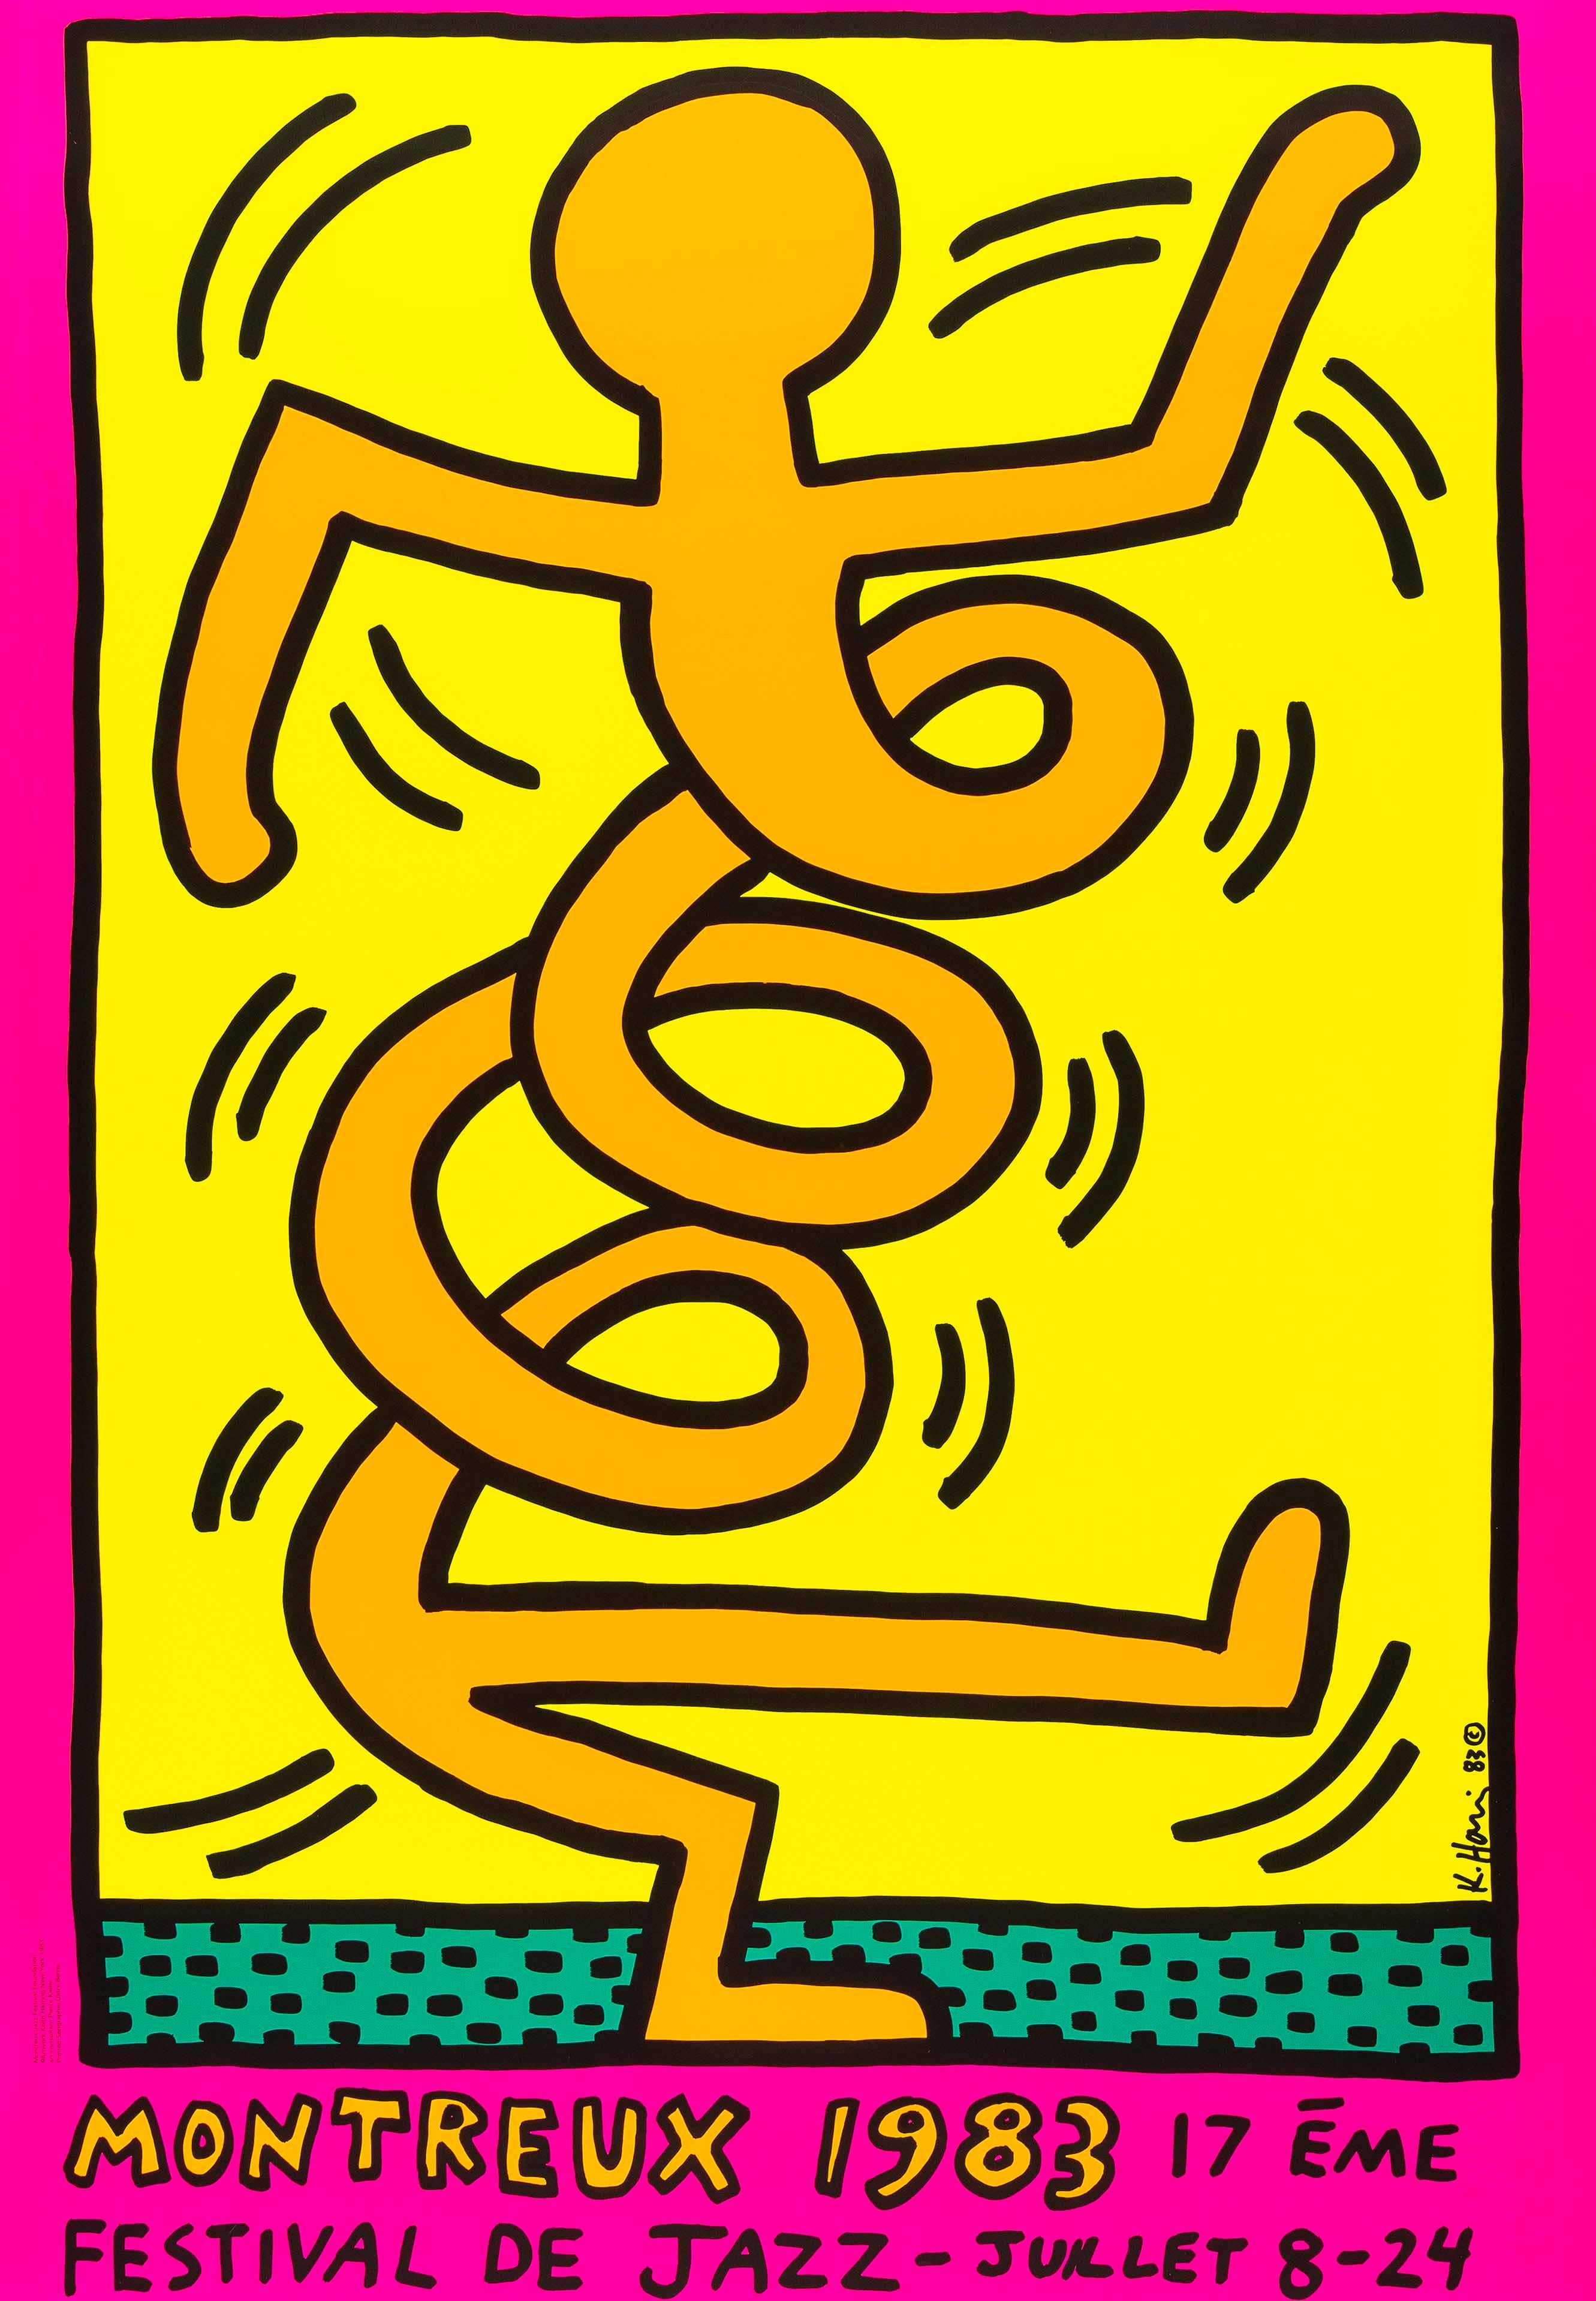 Montreux Jazz Festival, 1983
Keith Haring

Siebdruck in Farben, auf Vlies
Gedruckt bei Serigraphie Uldry Bern, Schweiz
Veröffentlicht für das Montreux Jazz Festival
Blatt:  100 × 70 cm (39.4 × 27.5 in)
Literatur: Döring & Osten 8